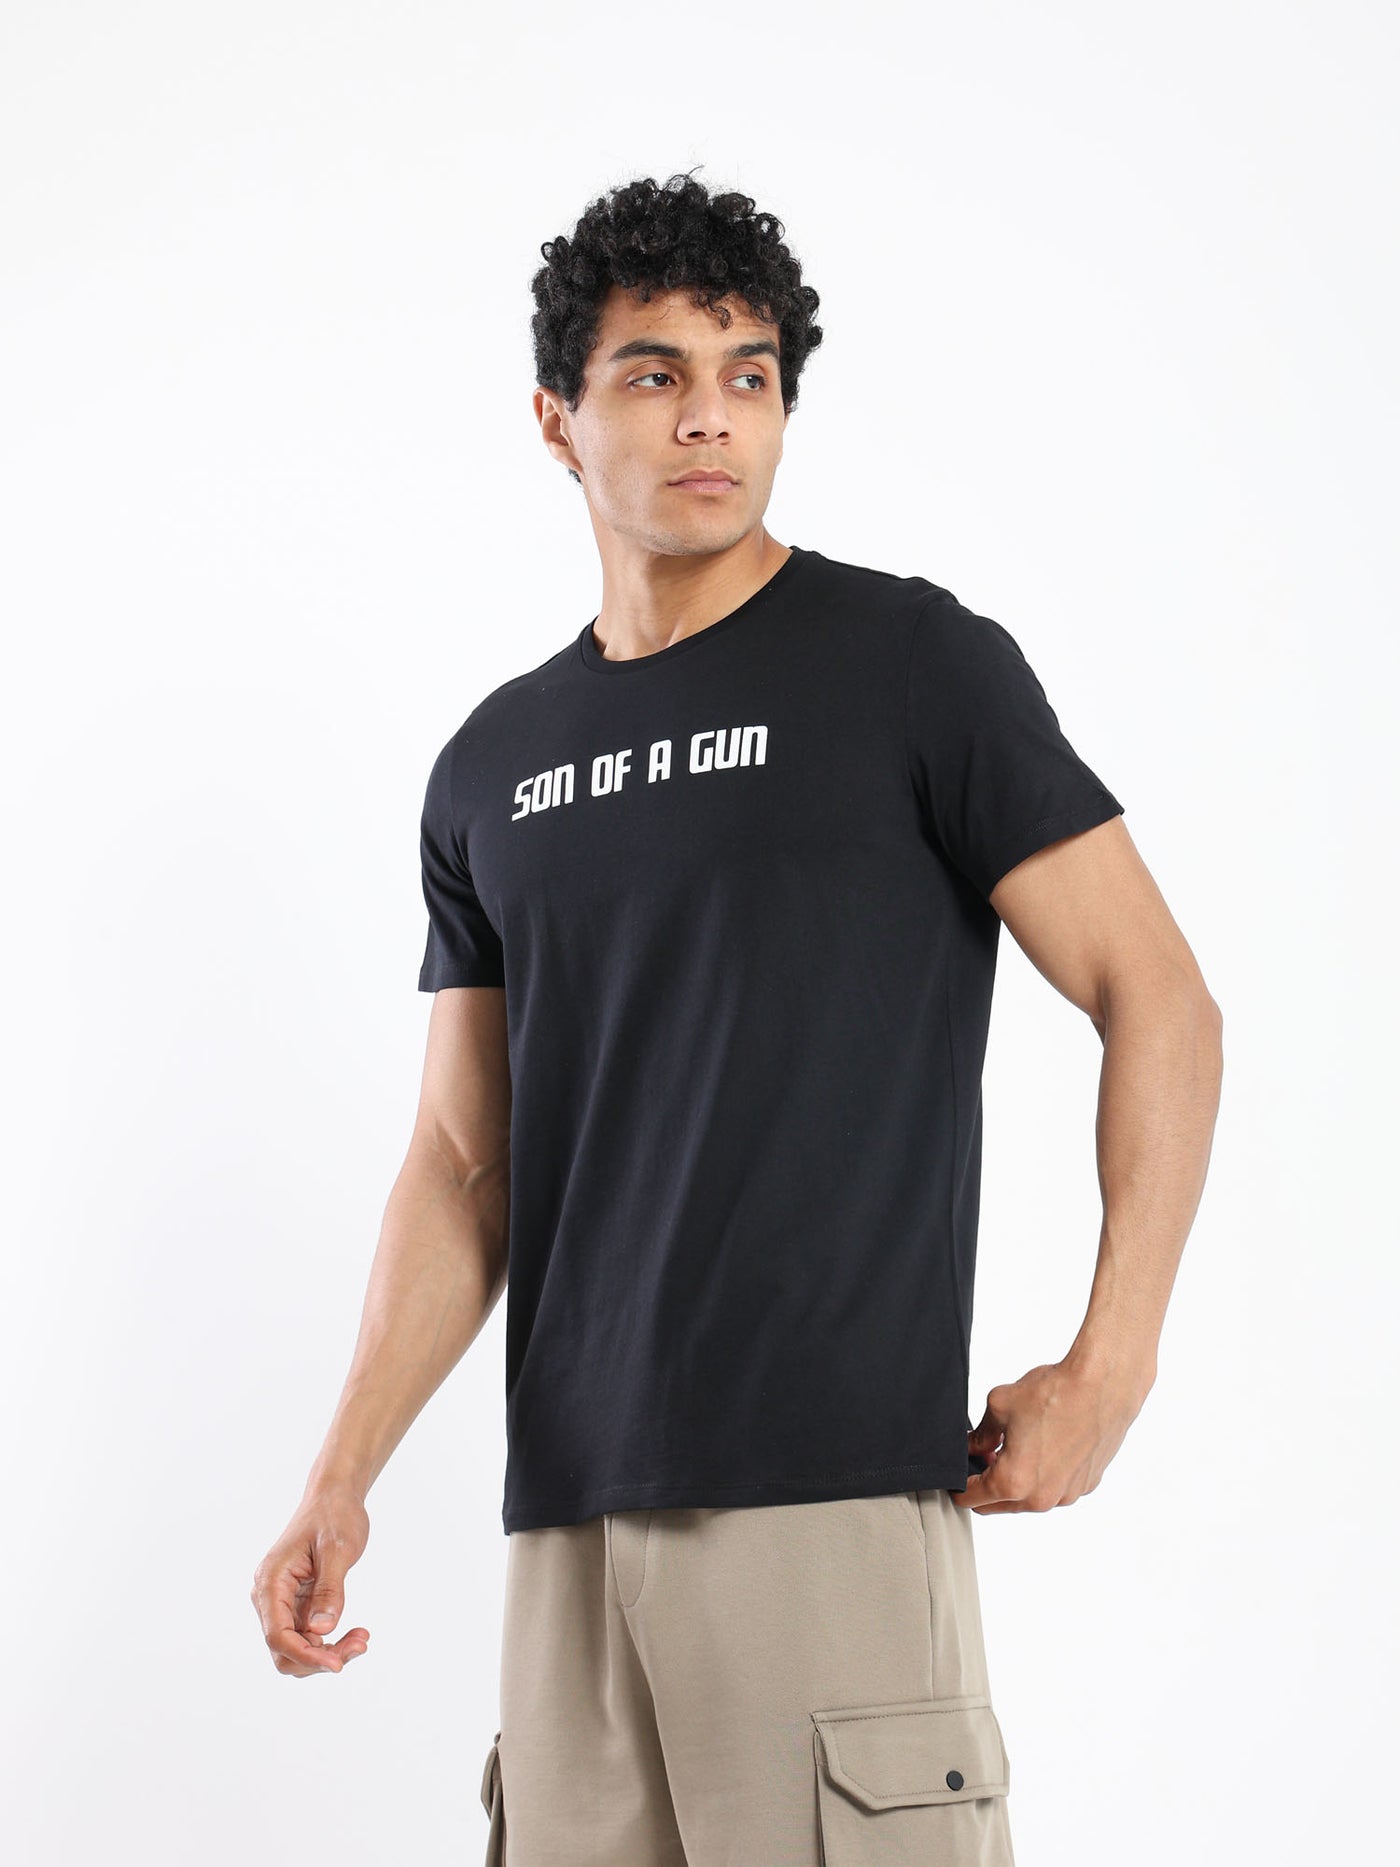 T-Shirt - "Son Of A Gun" Front Print